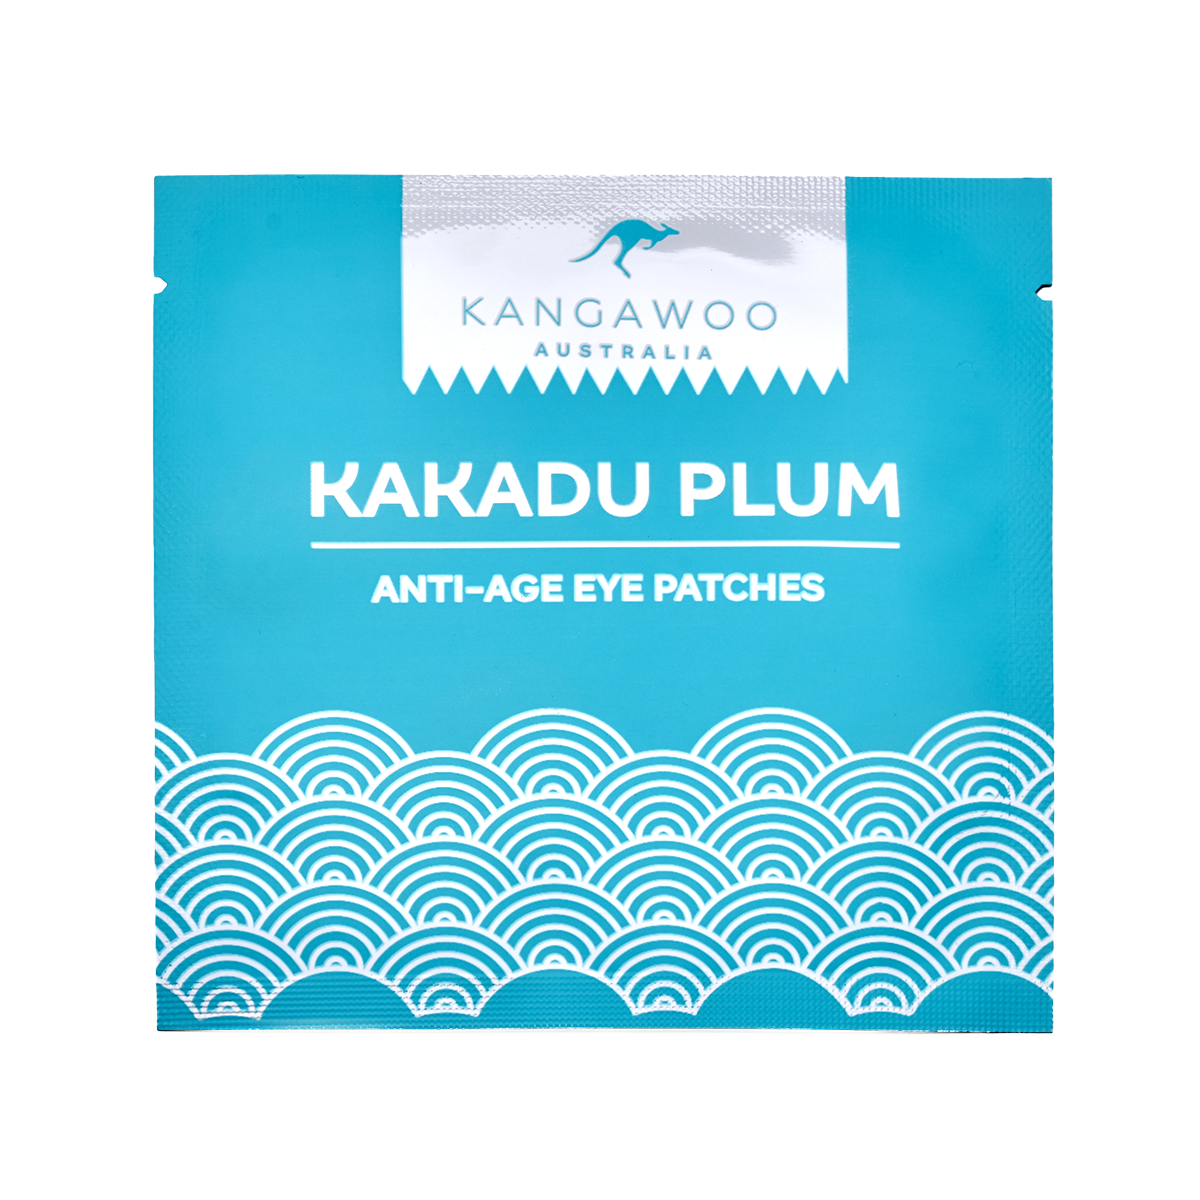 anti-age eye patches kakadu plum 4 ml